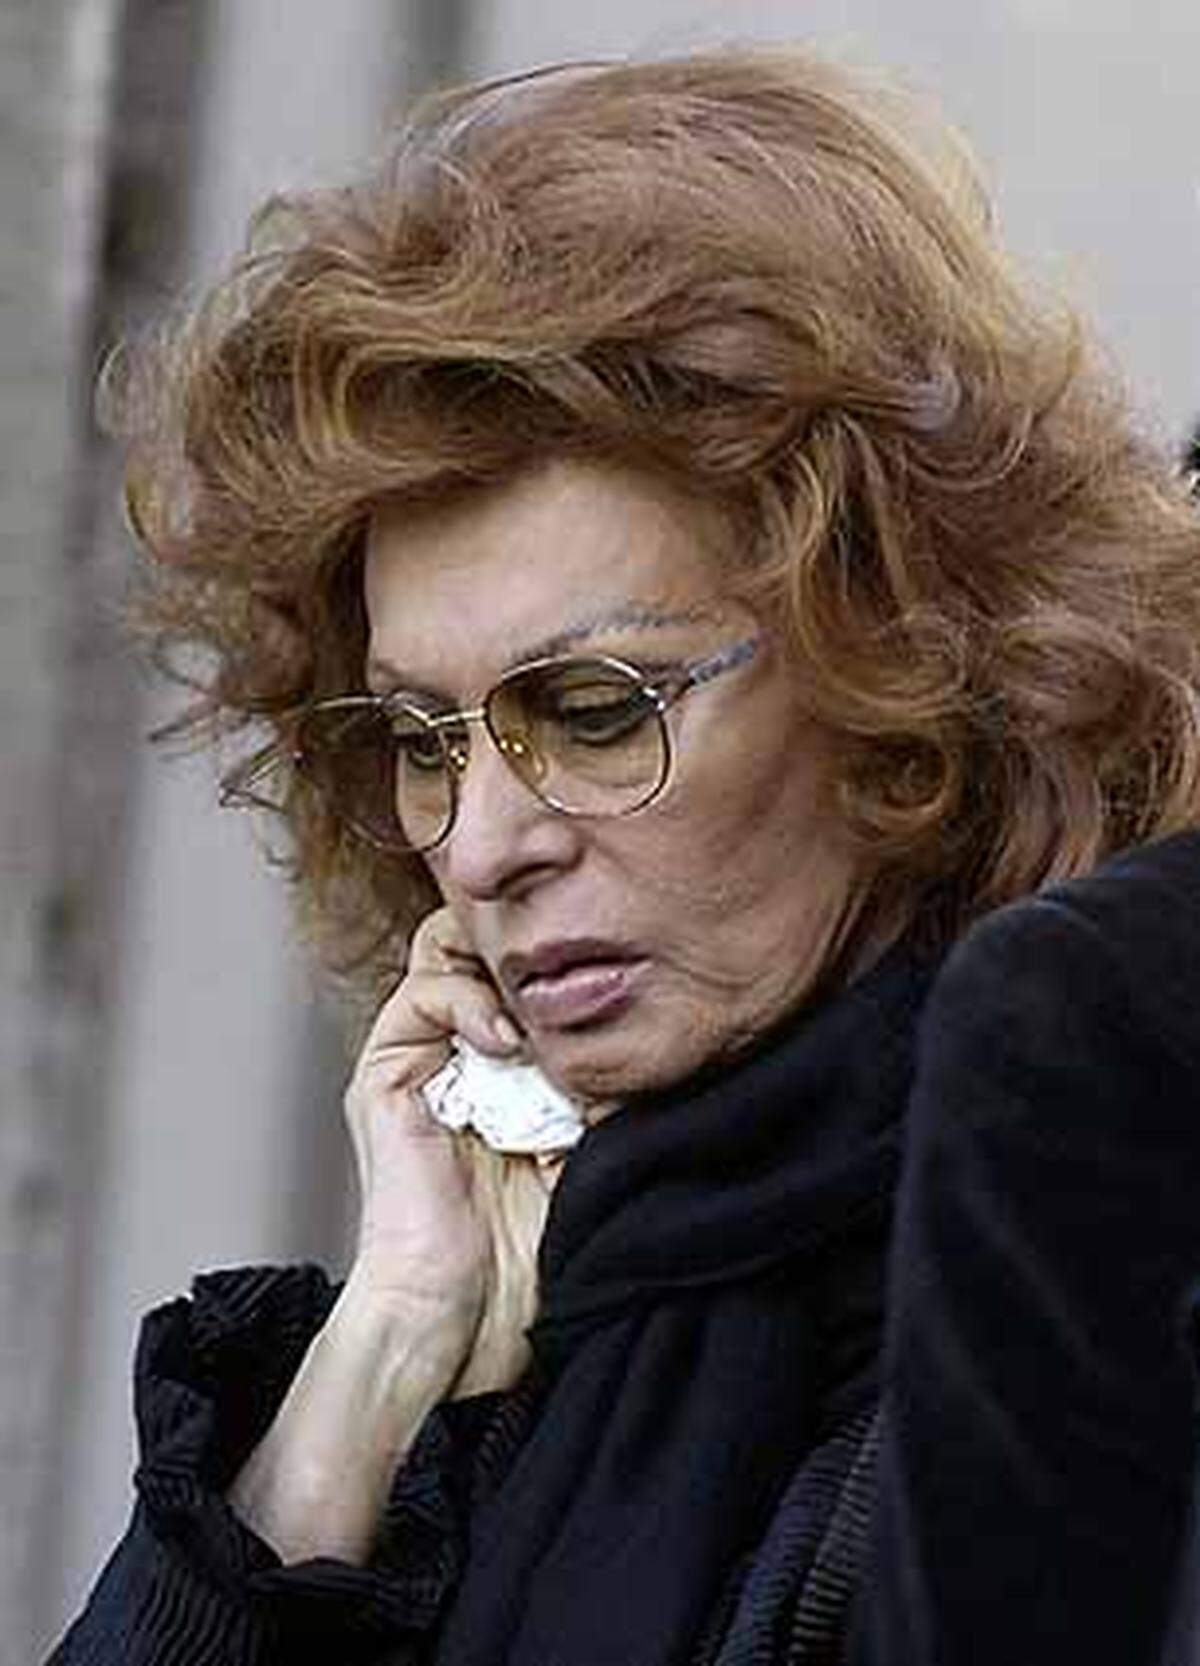 Ponti förderte seine Frau bis zu seinem Tod. Bild: Sophia Lorwen bei der Beerdigung von Carlo Ponti im Jahr 2007.